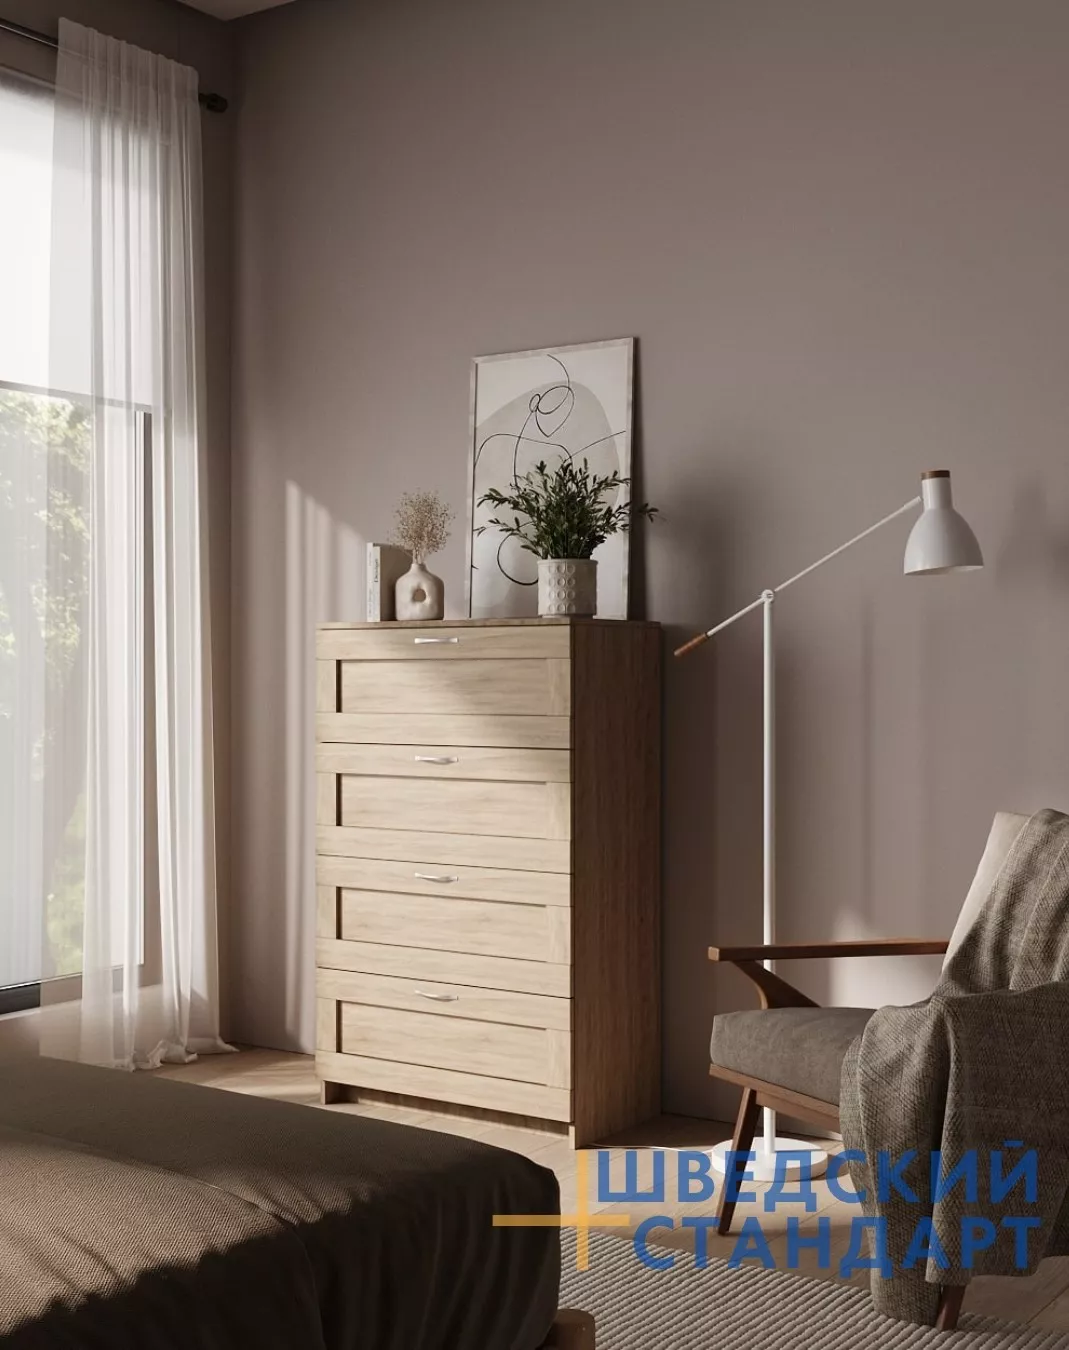 Спальня | Комоды | СИРИУС Комод с 4 ящиками IKEA BRIMNES 060.3 Мебель ☆ IDEA в Севастополе| ШВЕДСКИЙ СТАНДАРТ anons